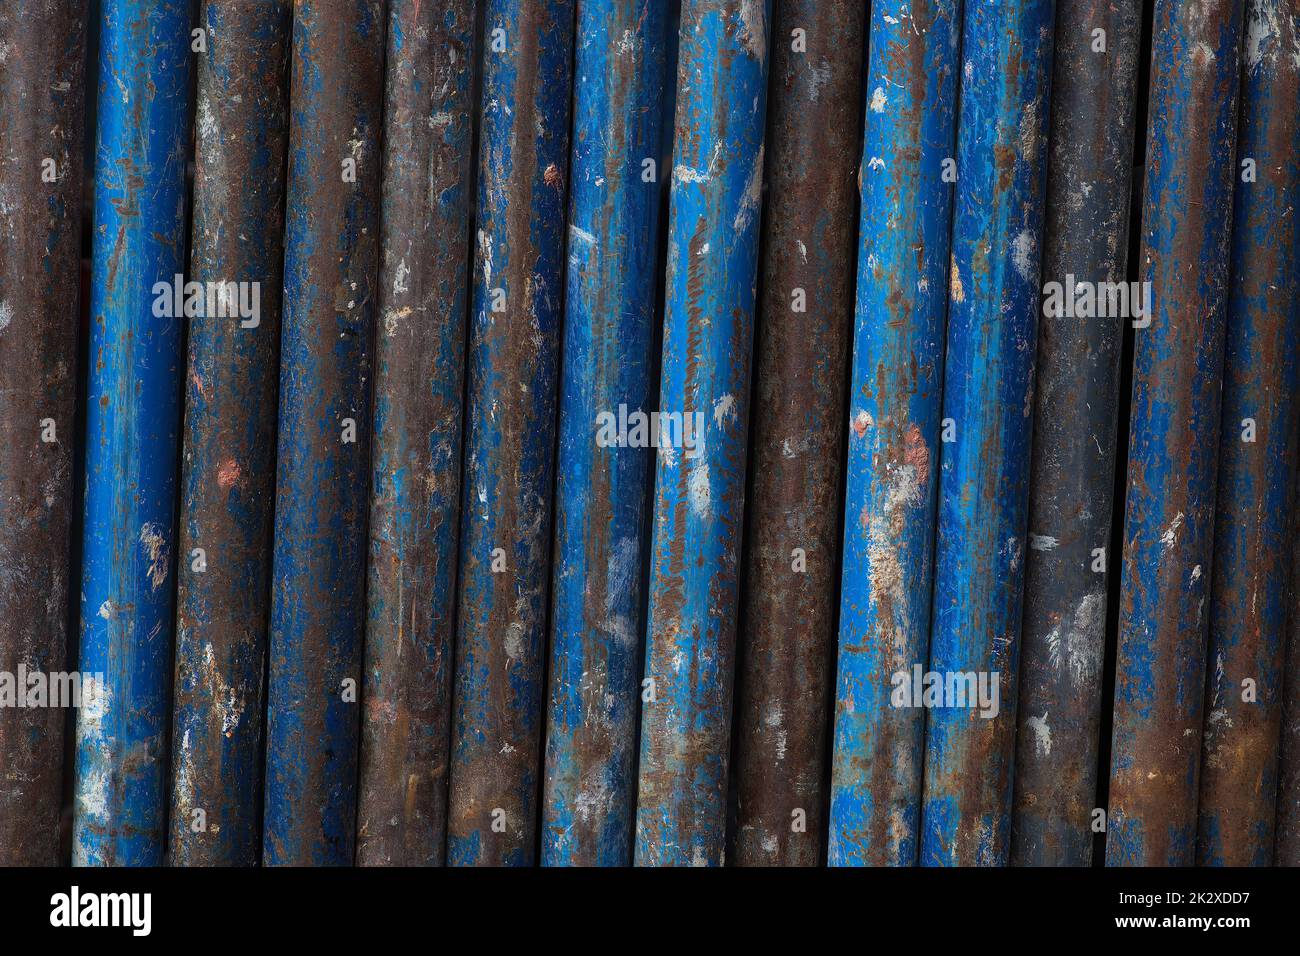 óxido metal líneas verticales fondo tubos azul andamio industrial textura hierro Foto de stock